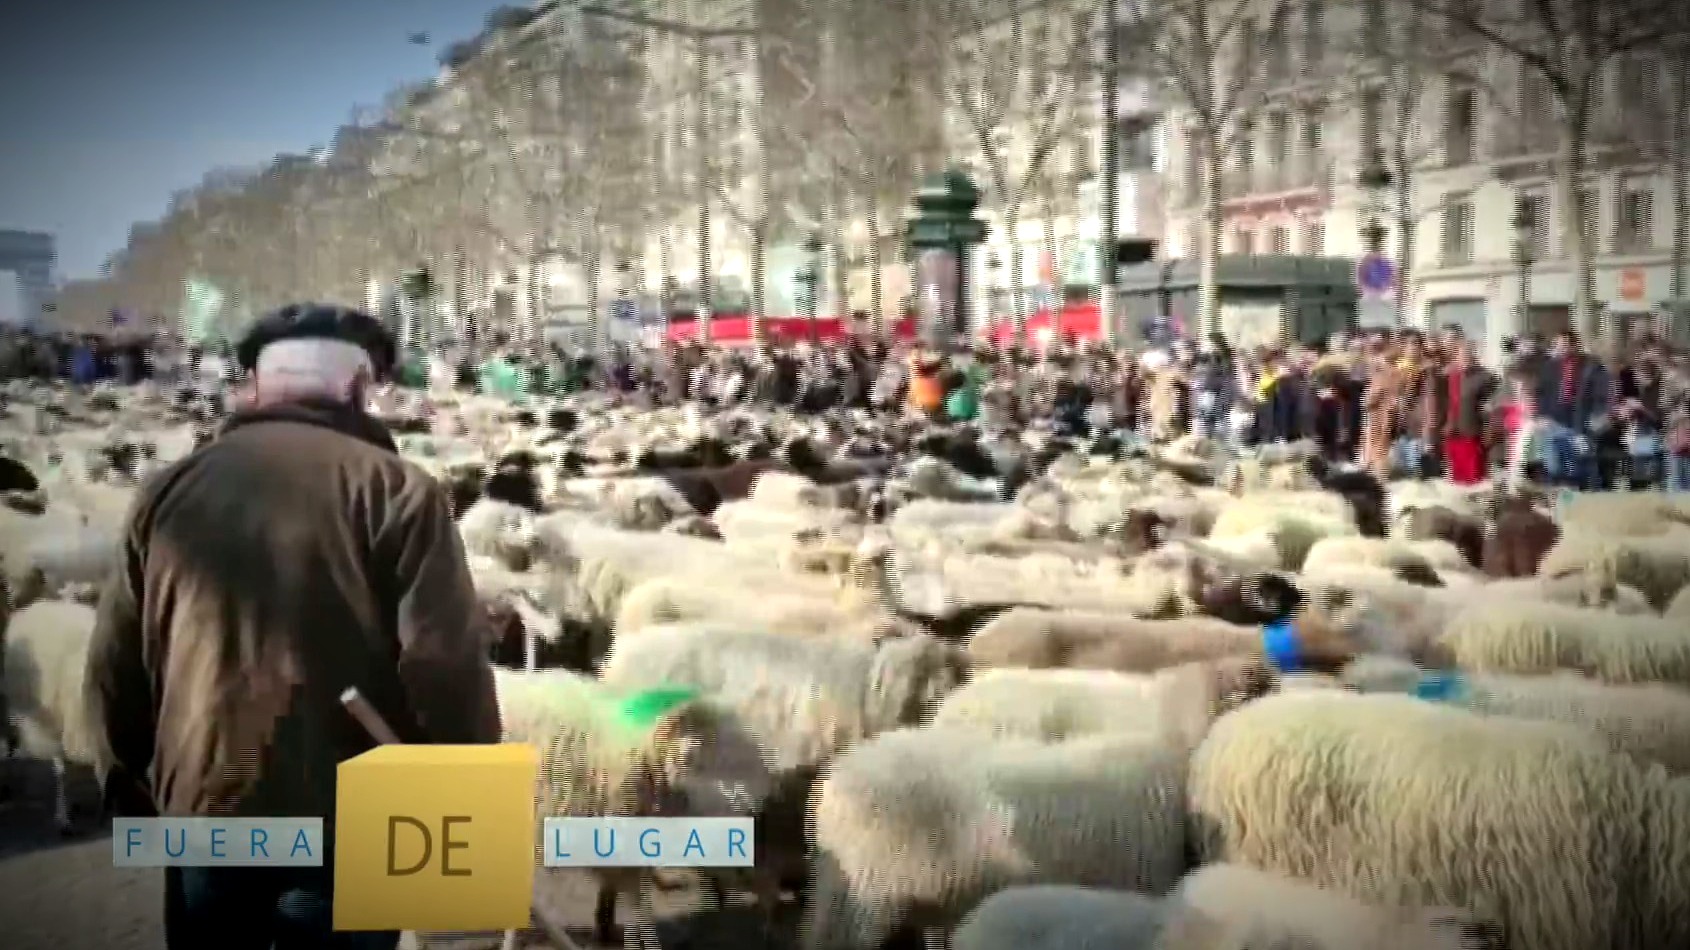 fuera de lugar mas de dos mil ovejas toman campos eliseos en paris